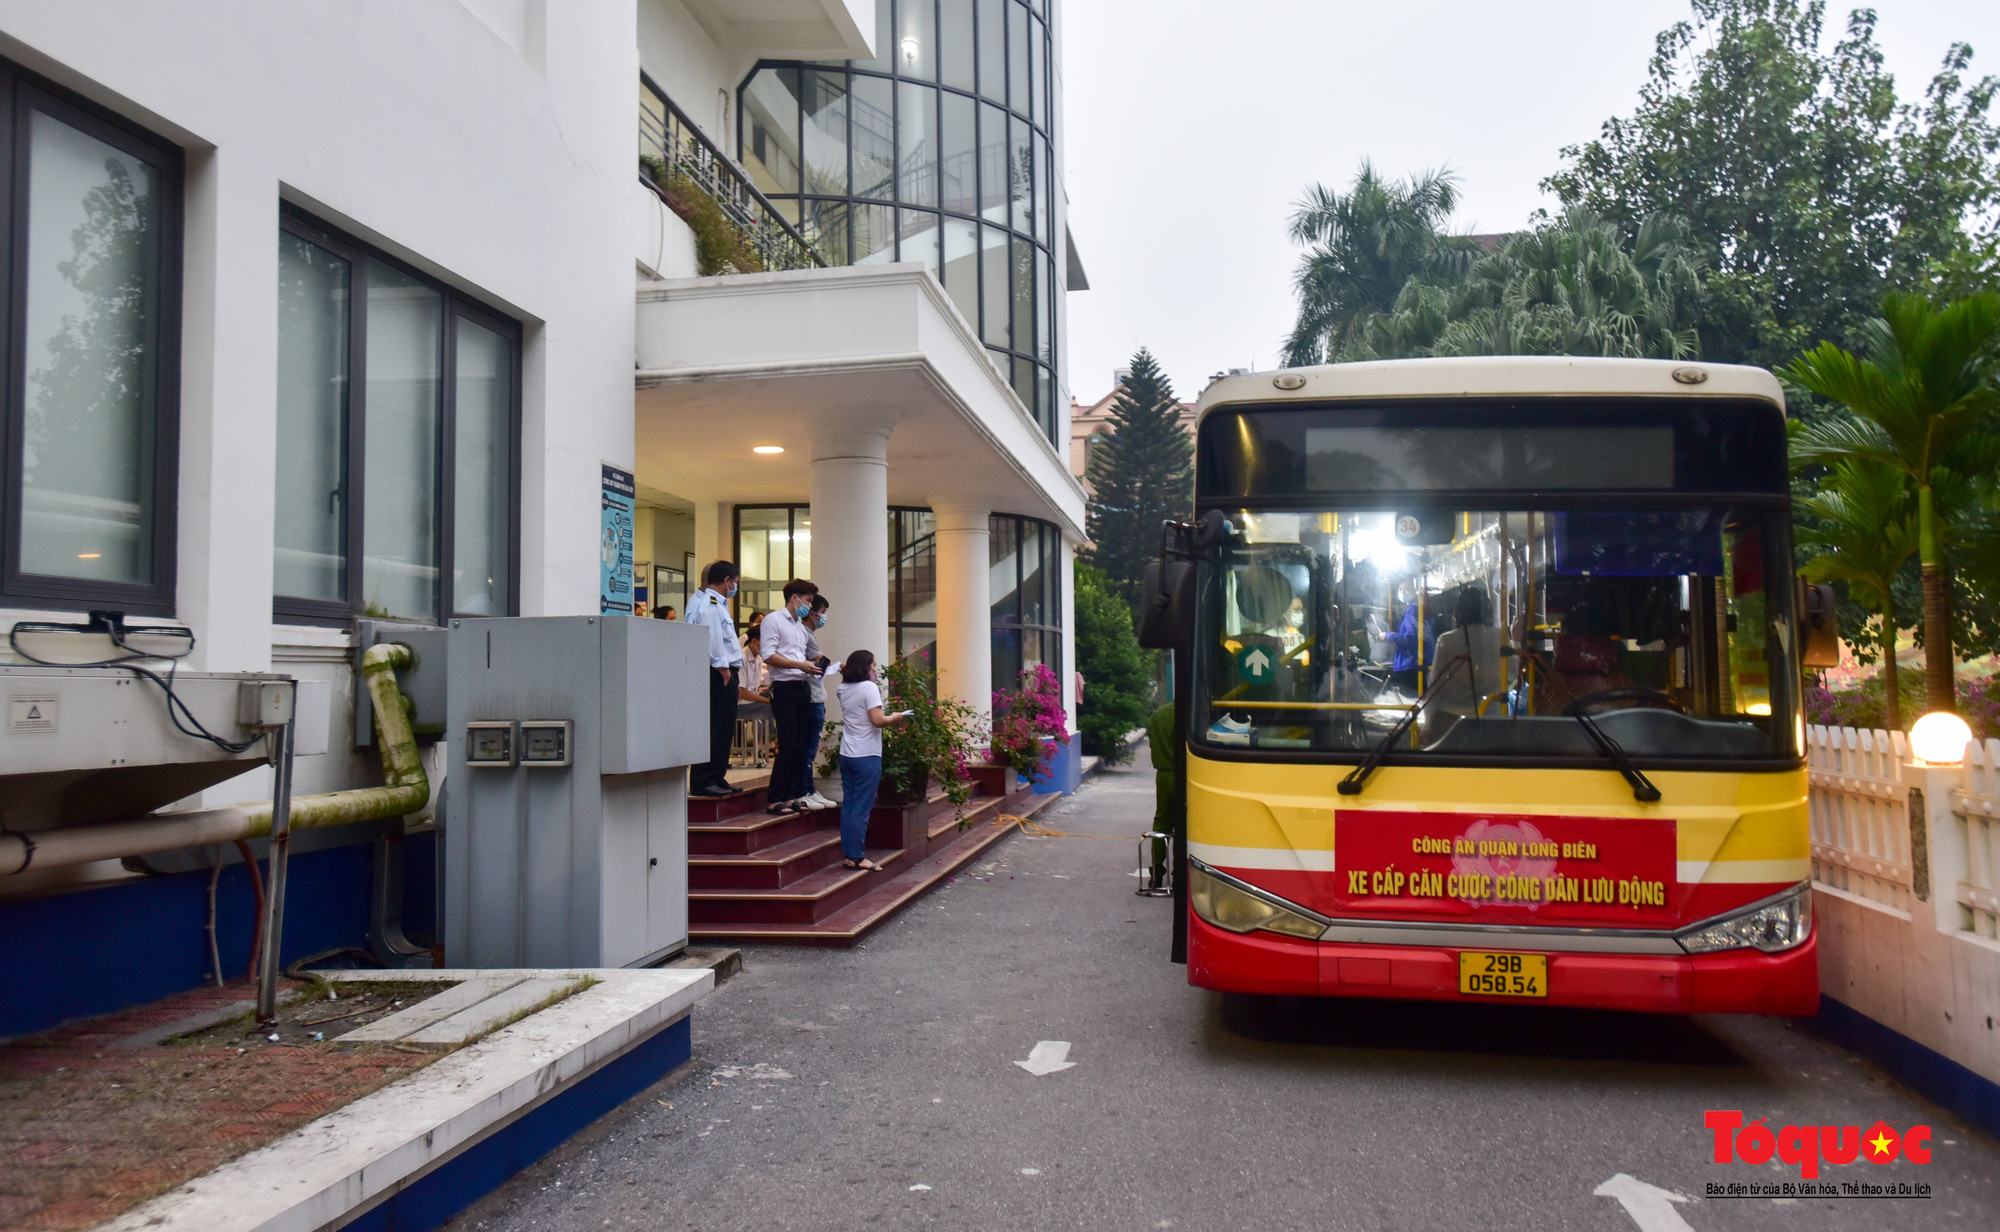 Công an Hà Nội dùng xe bus làm điểm cấp căn cước công dân lưu động - Ảnh 1.